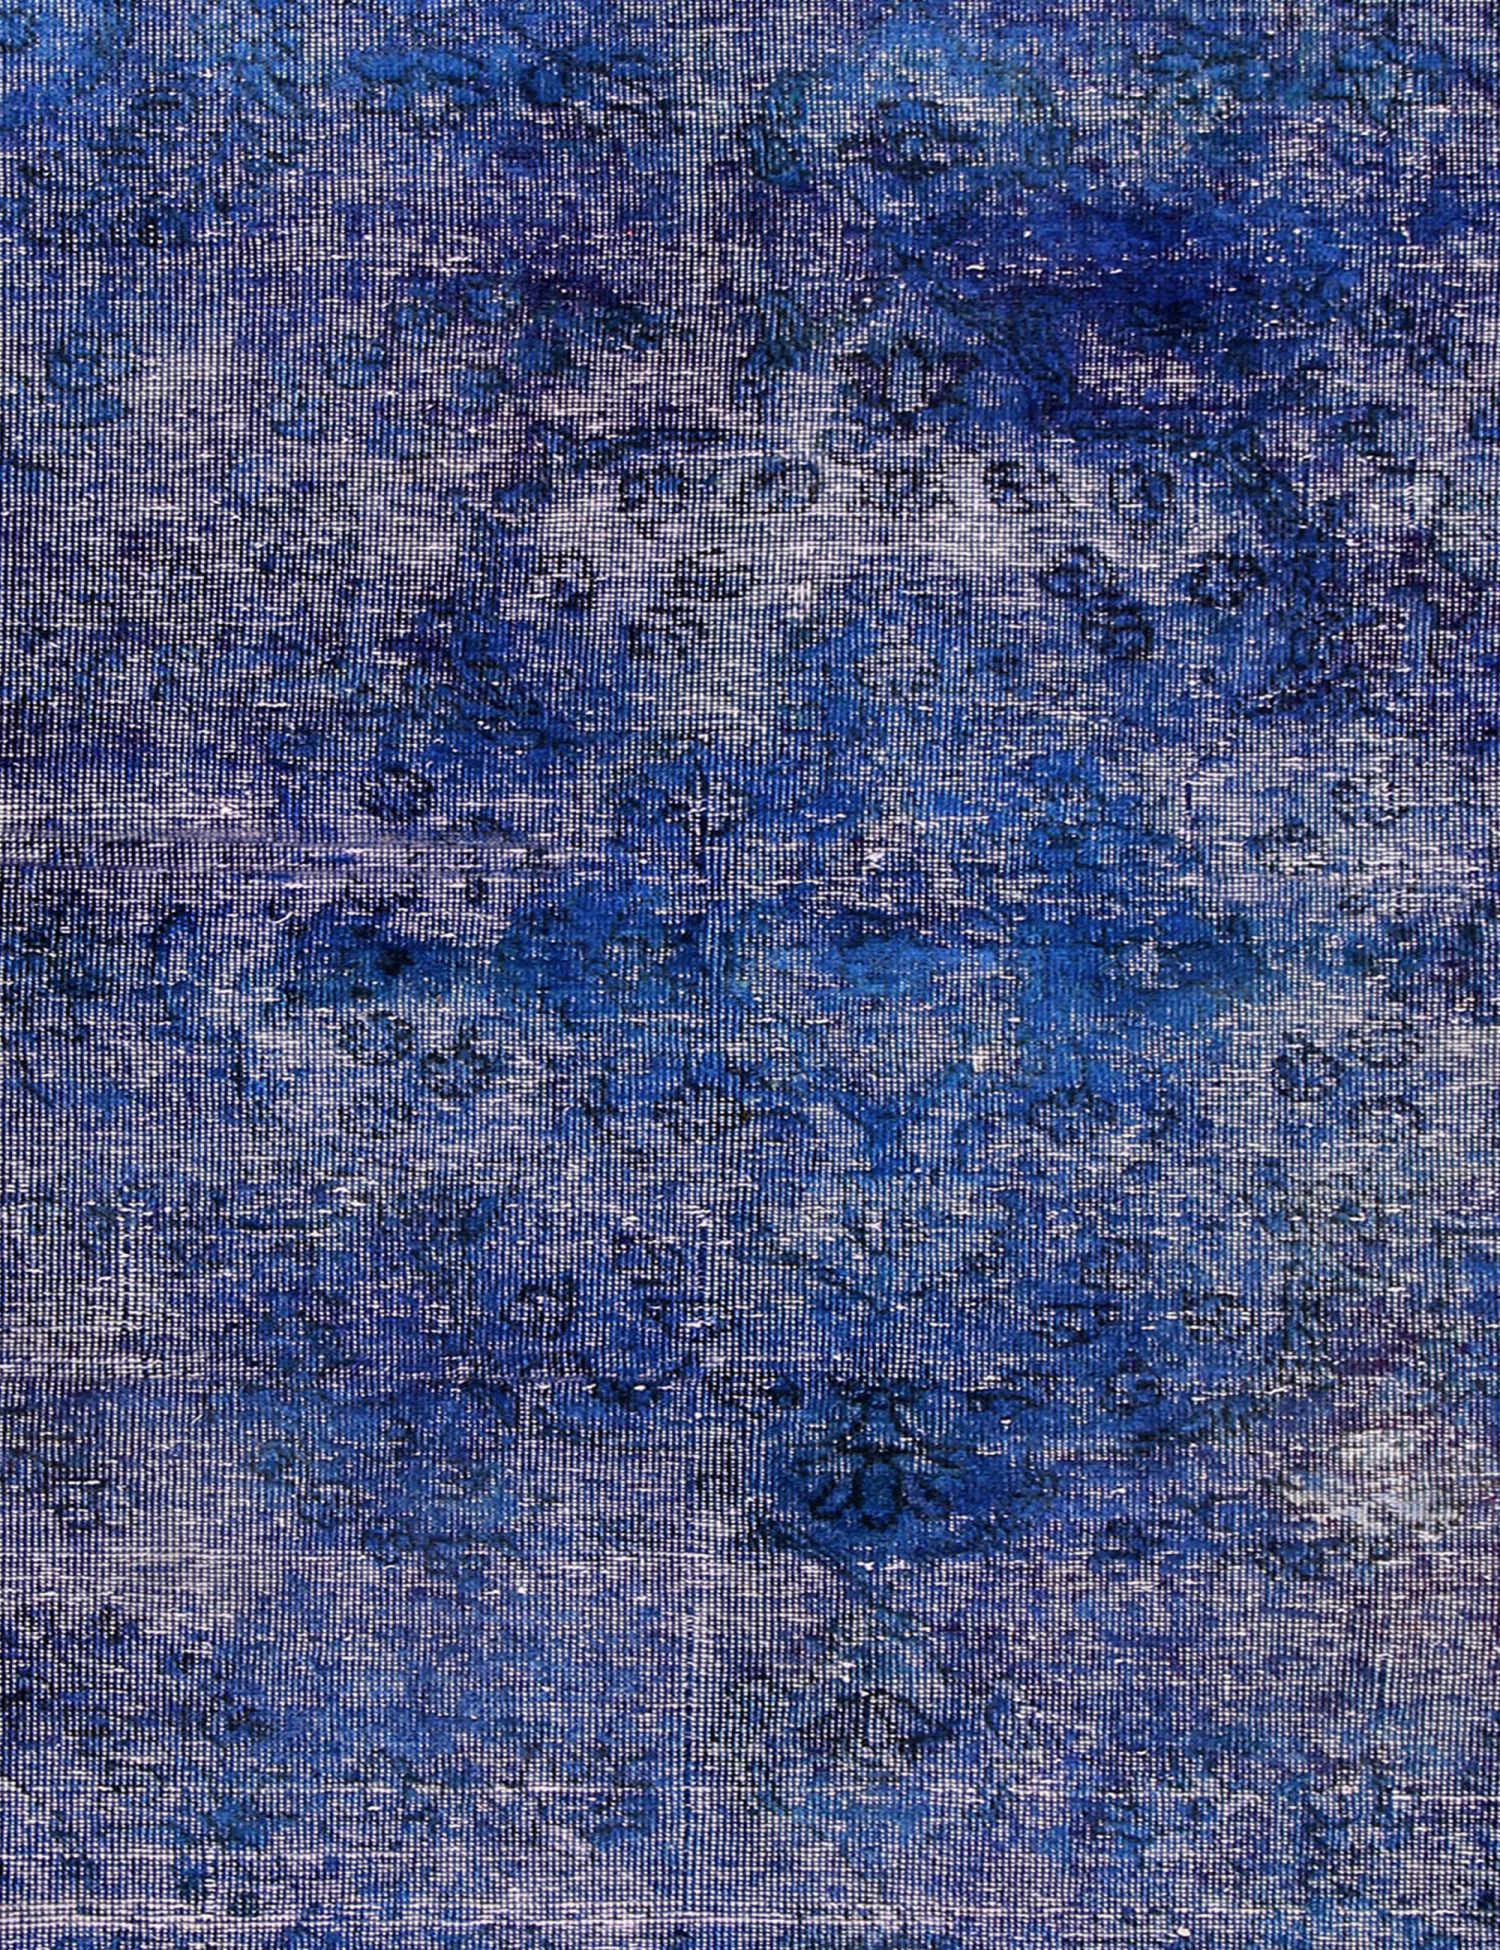 Persisk vintagetæppe  blå <br/>205 x 105 cm